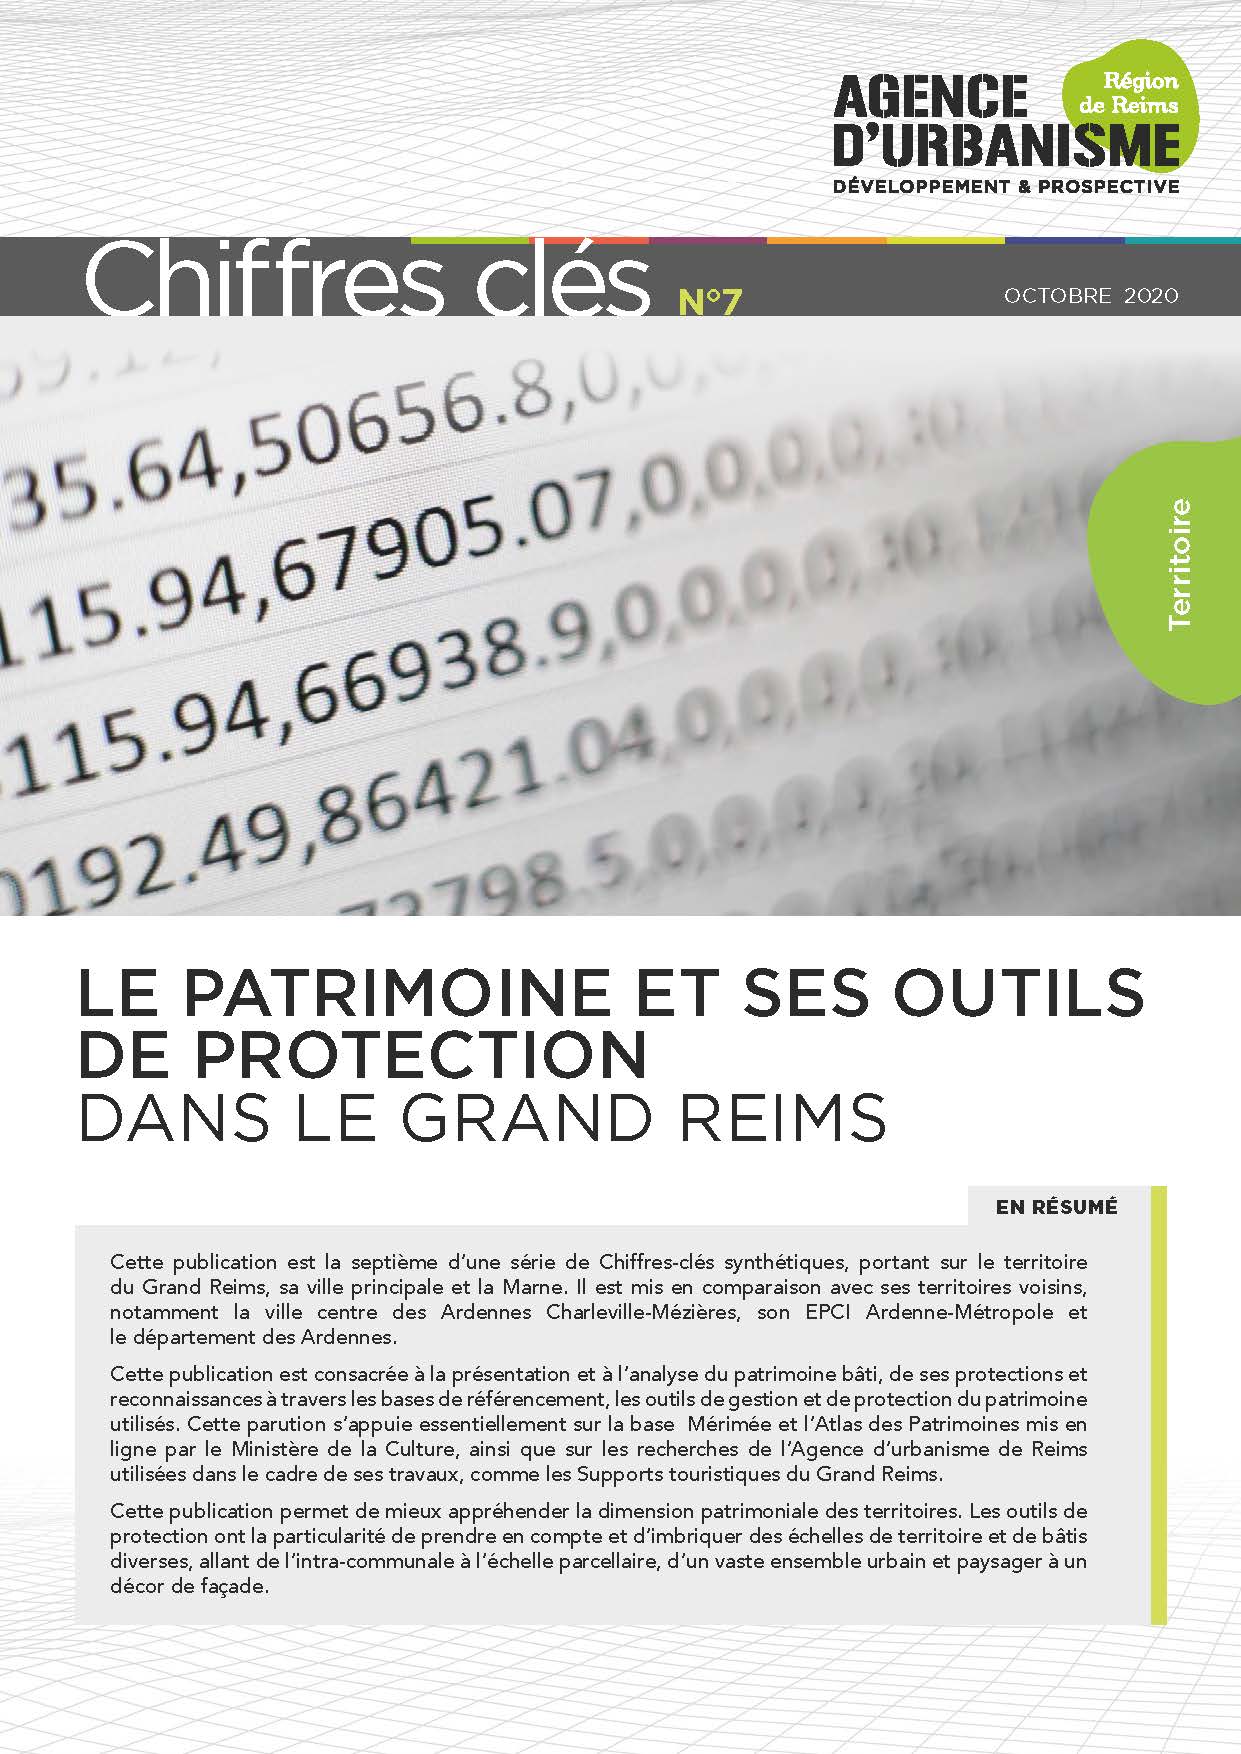 CHIFFRES CLÉS N°7 : LE PATRIMOINE ET SES OUTILS DE PROTECTION DANS LE GRAND REIMS